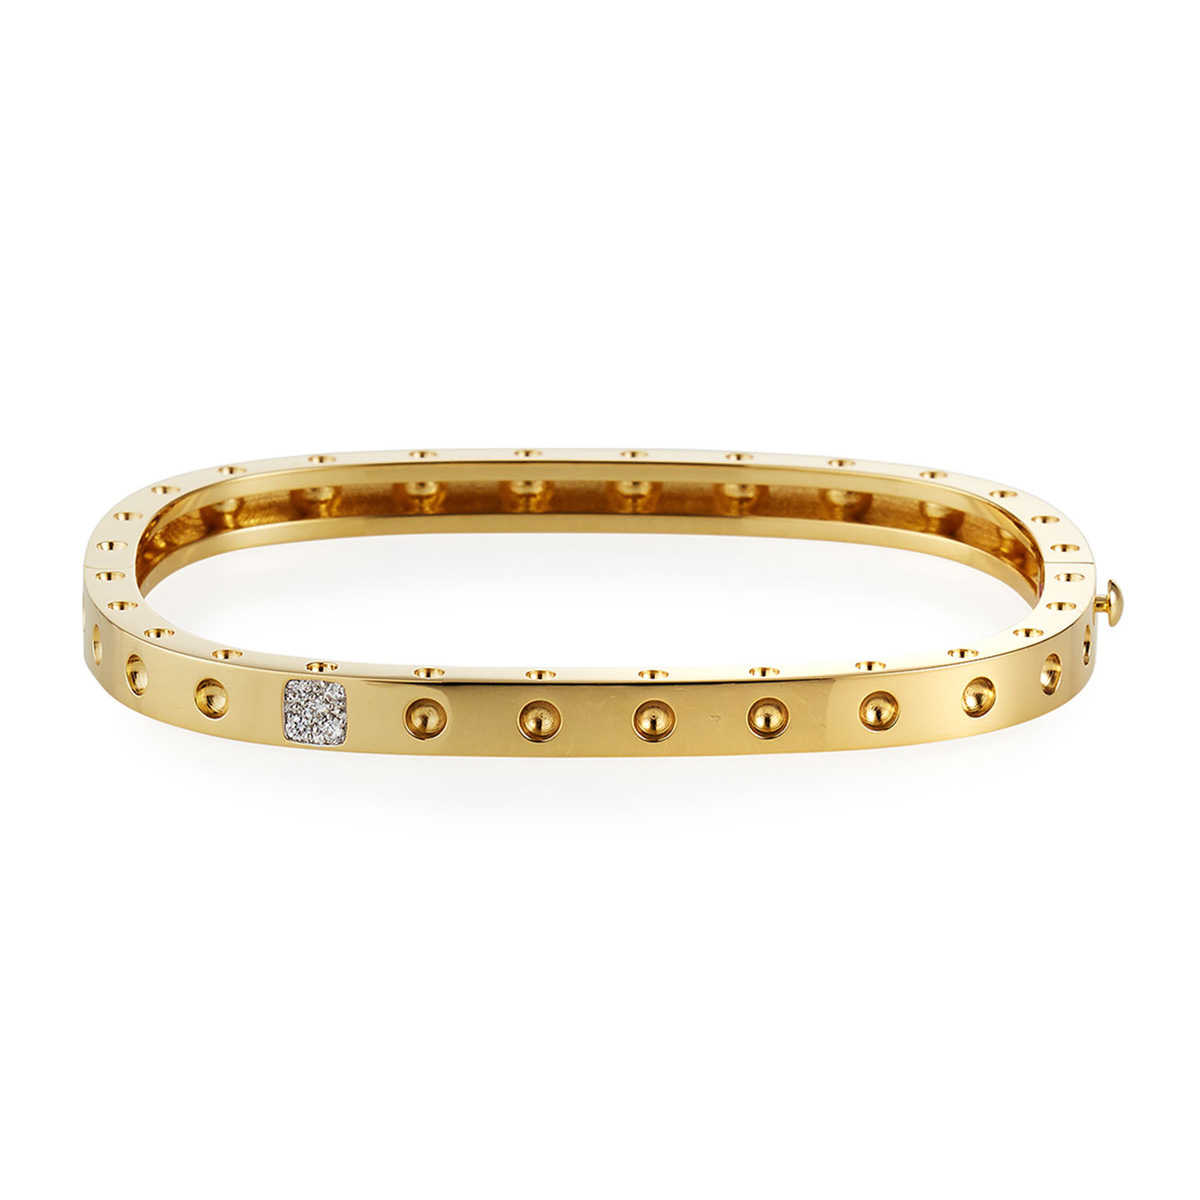 Grosir gelang emas kuning OEM 18K untuk Perhiasan OEM/ODM 20 tahun pengalaman dalam pembuatan perhiasan khusus